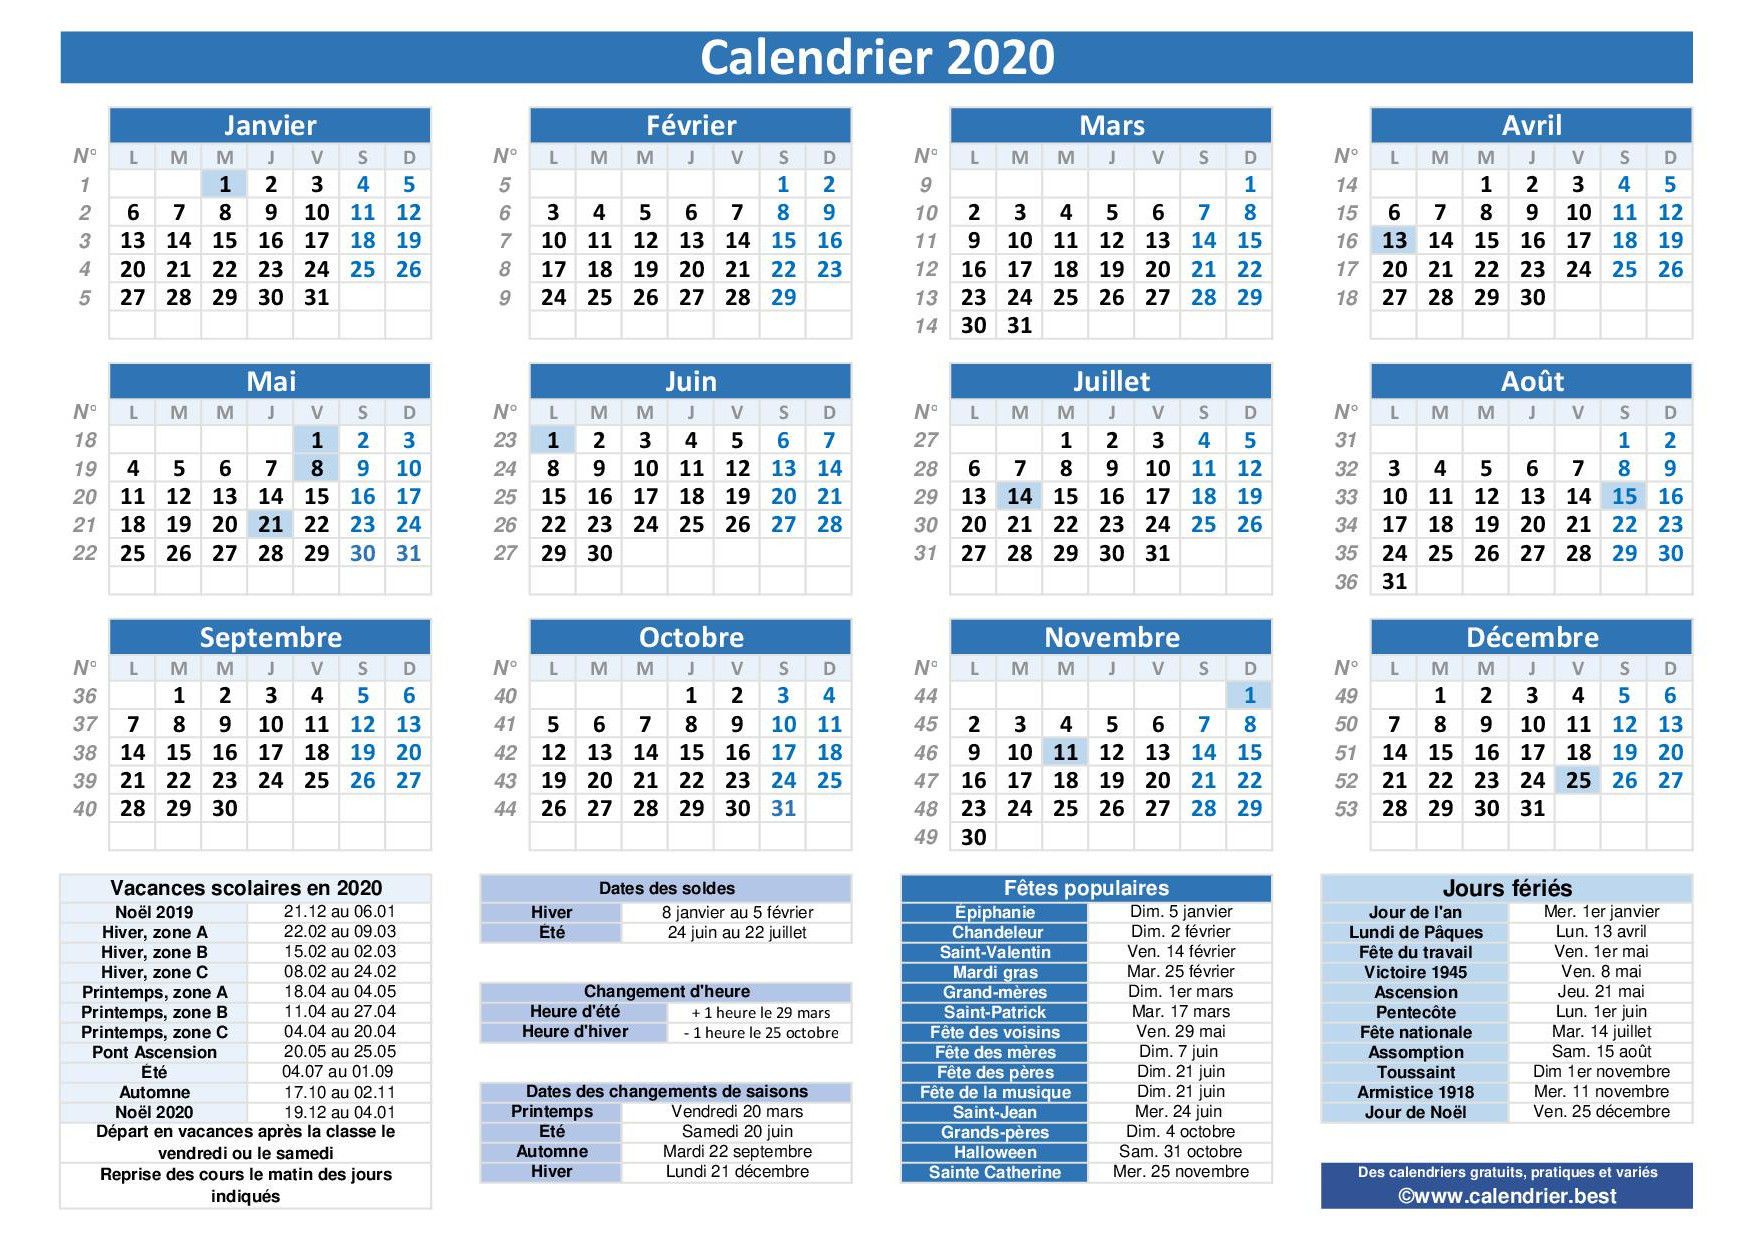 Calendrier Avec Numéro De Semaine 2021 Calendrier 2020 avec jours fériés et dates utiles à imprimer 